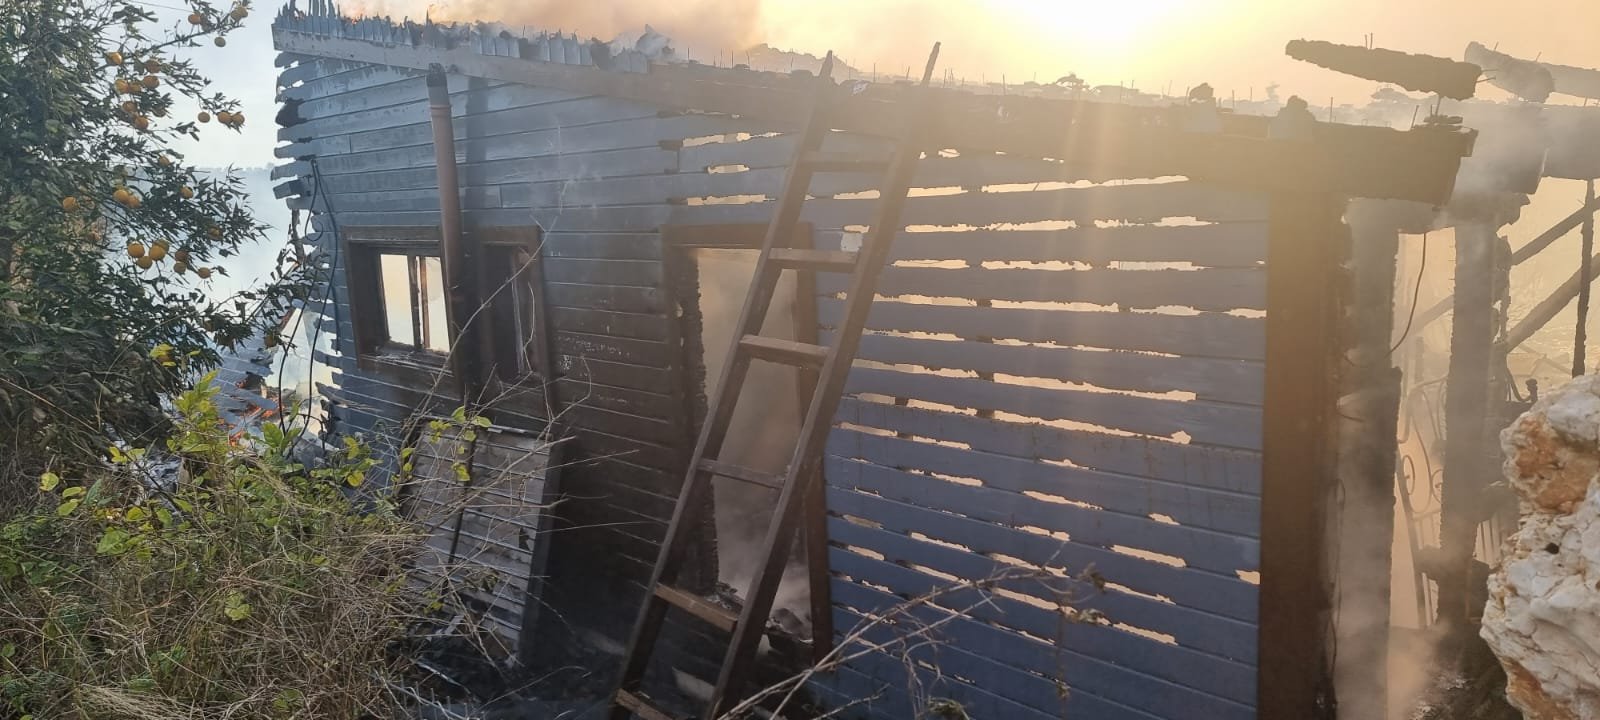 اصابة خطيرة لرجل اثر اندلاع حريق داخل منزل في يانوح-0